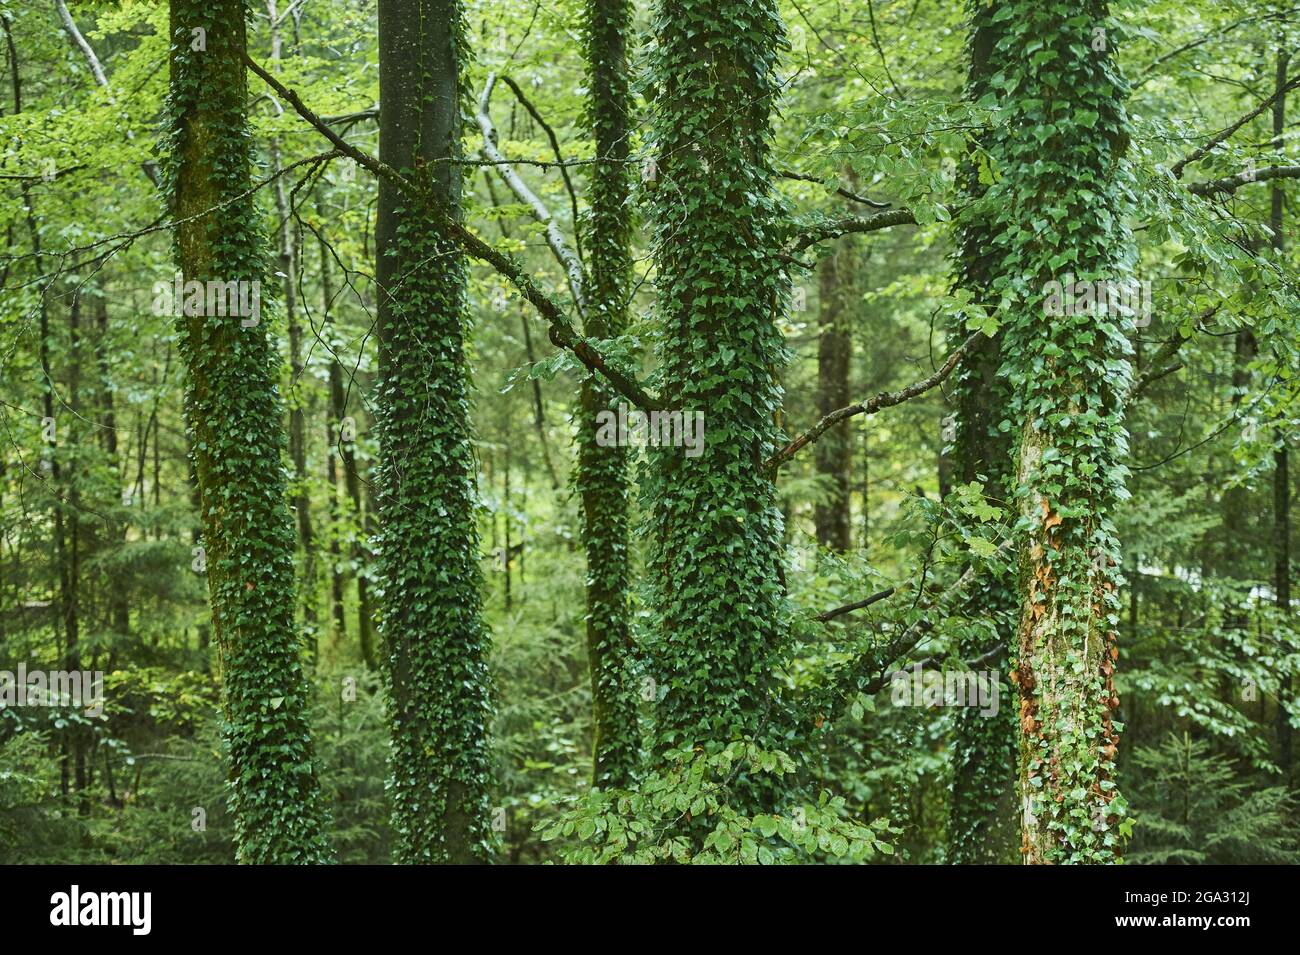 Efeu oder englischer Efeu (Hedera Helix), der auf einem Baumstamm wächst, Berchtesgadener Land; Bayern, Deutschland Stockfoto